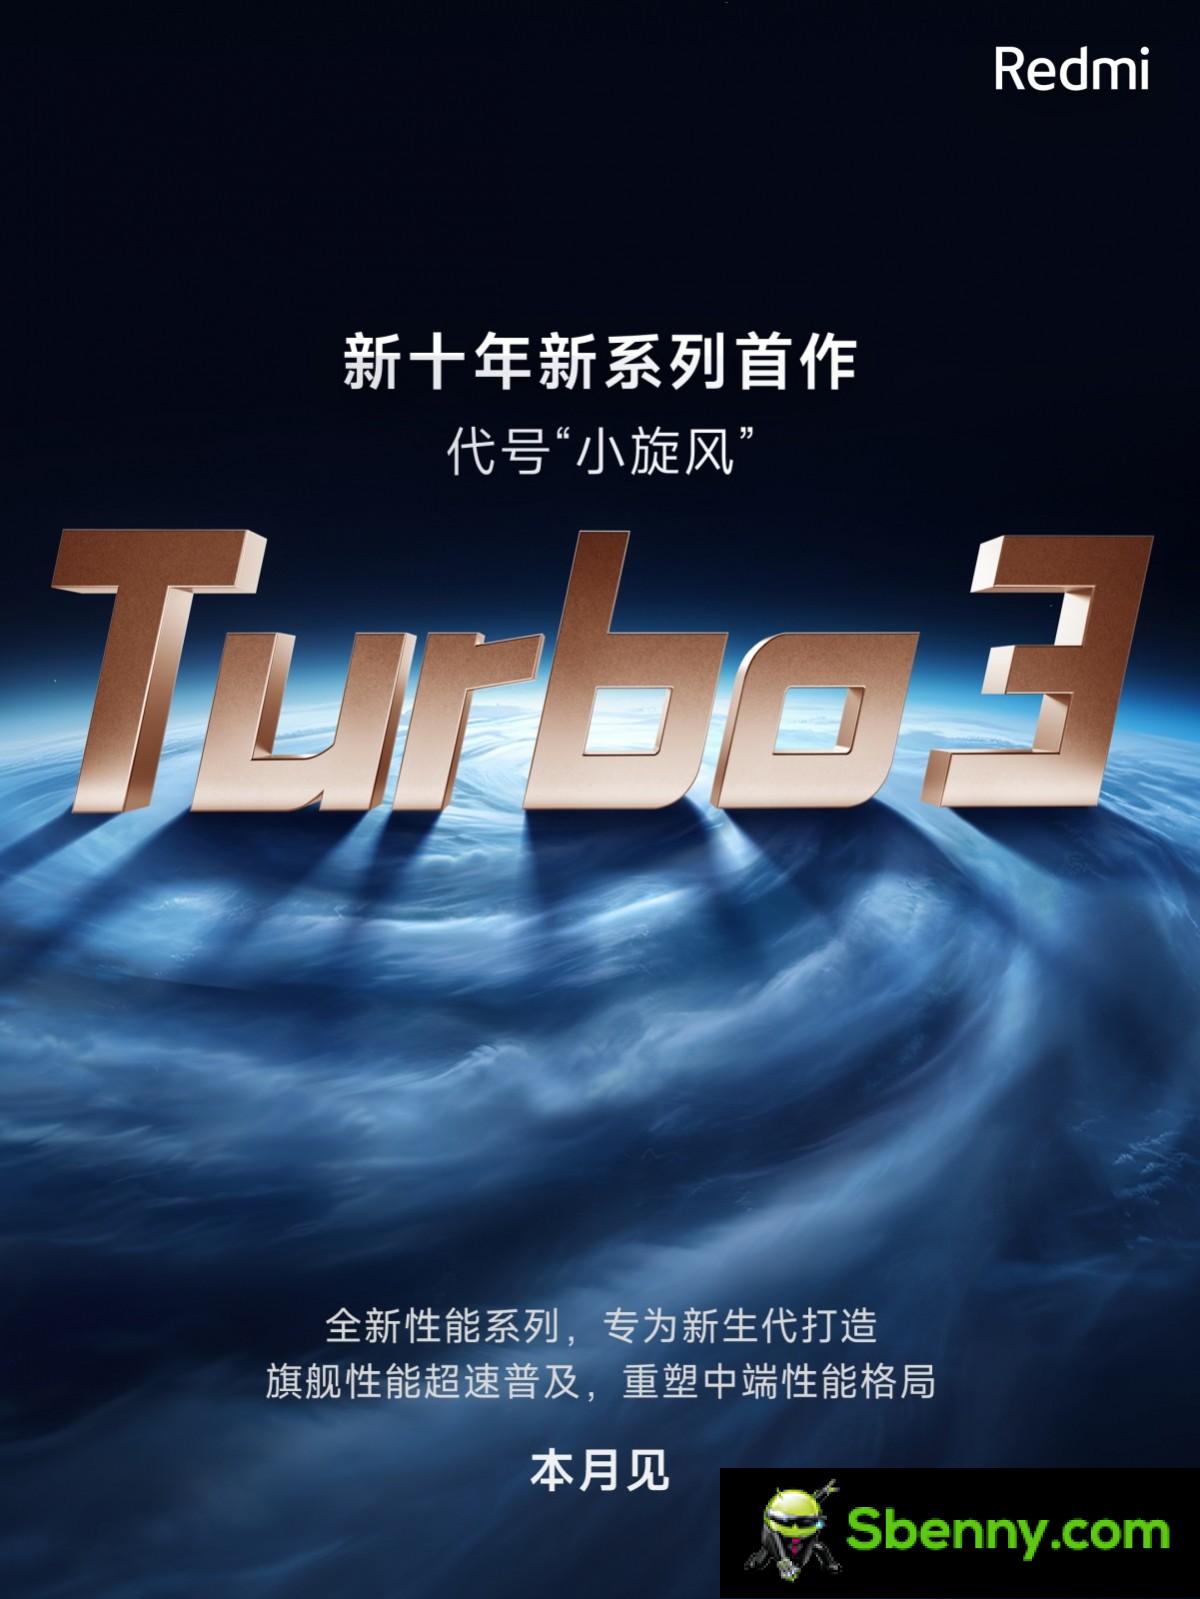 Redmi anuncia Turbo 3 como parte de la nueva generación de la serie insignia de alto rendimiento